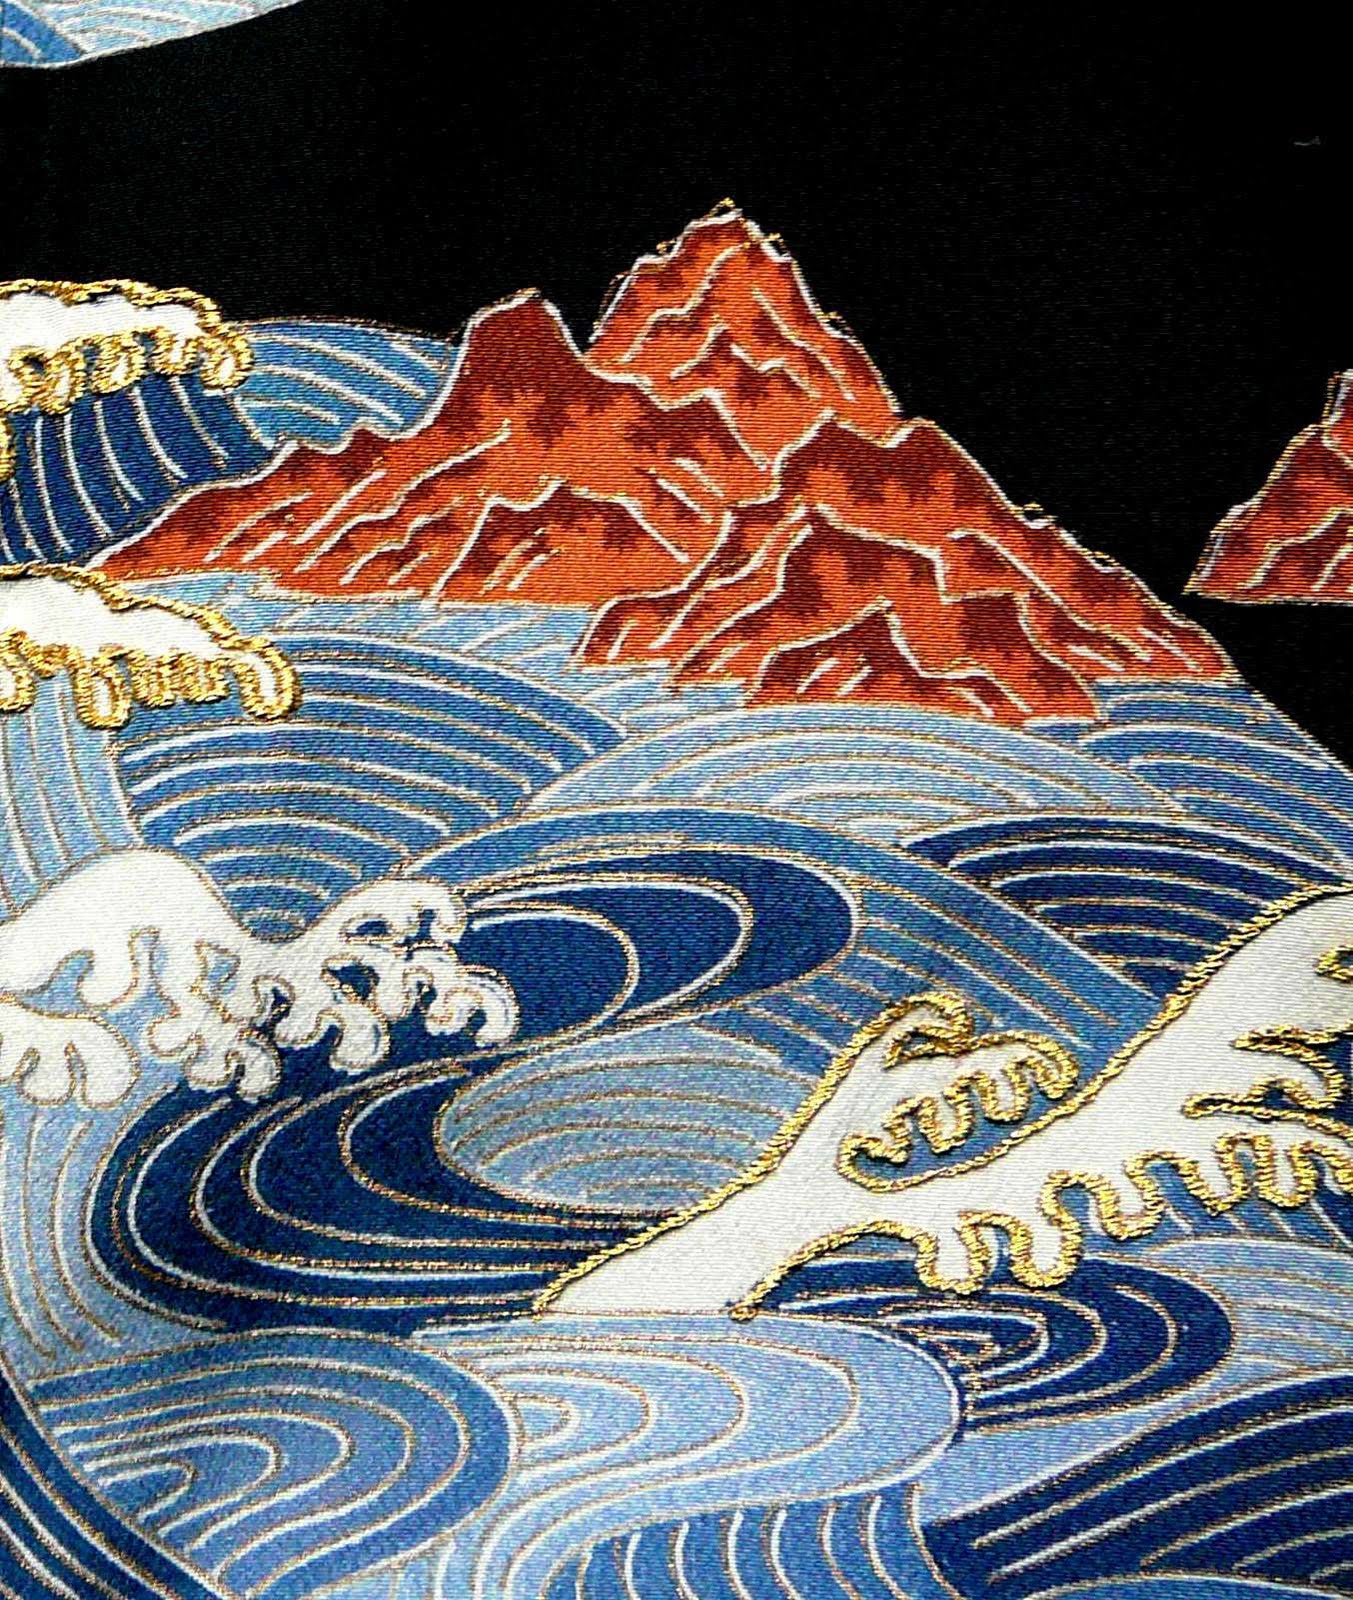 Japanese vintage kimono world : Japanese traditional craft